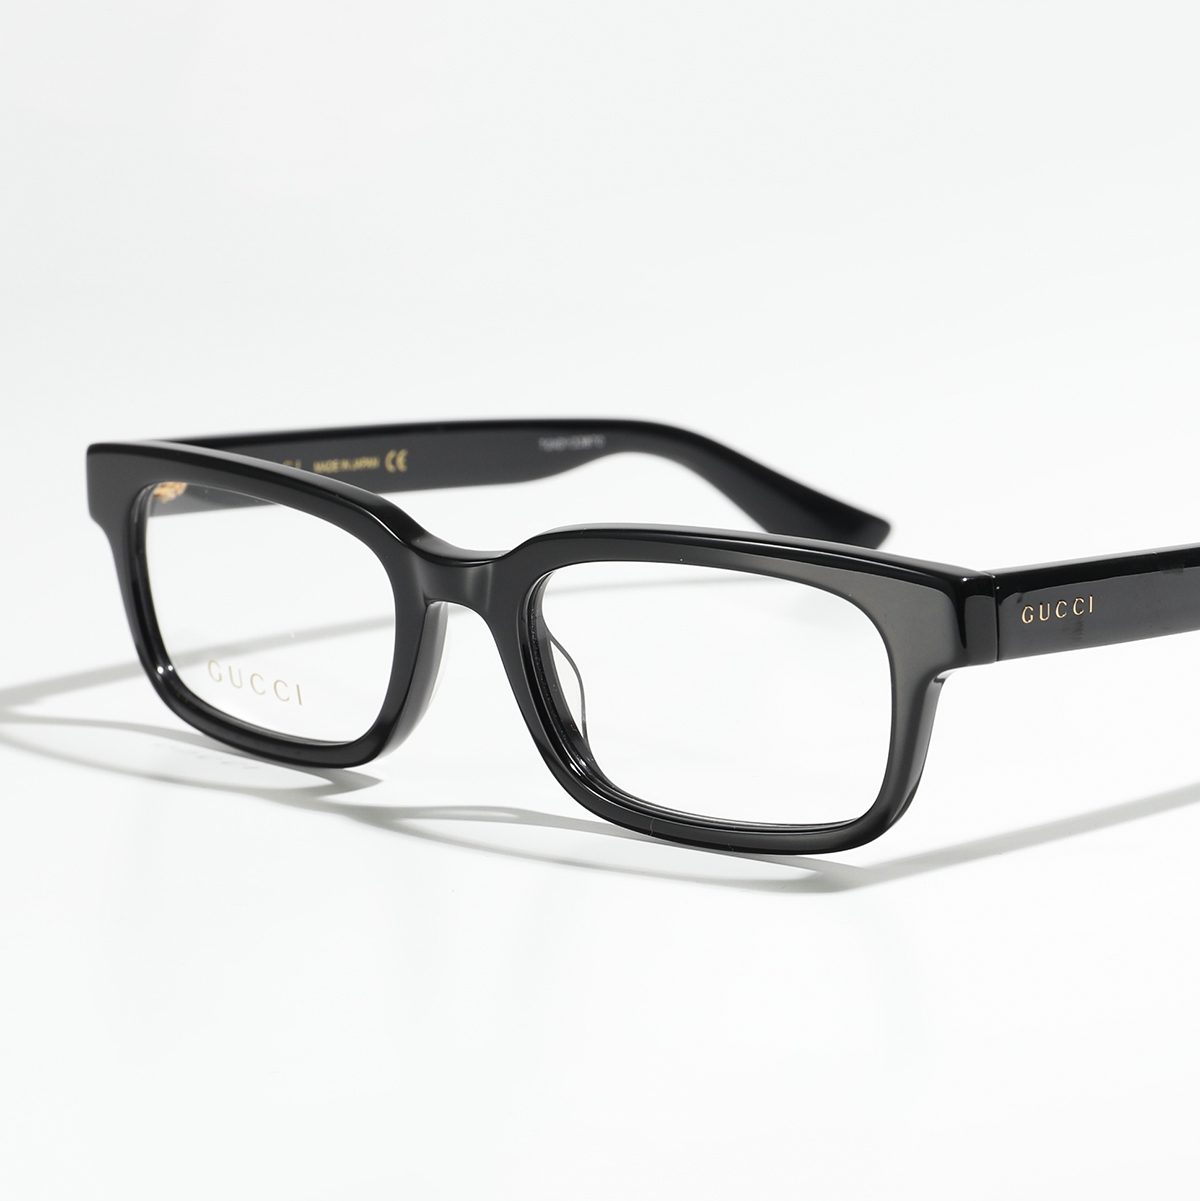 GUCCI グッチ メガネ GG0928O メンズ 眼鏡 フレーム 伊達メガネ ダテ スクエア型 アイウェア めがね 黒縁メガネ カラー2色